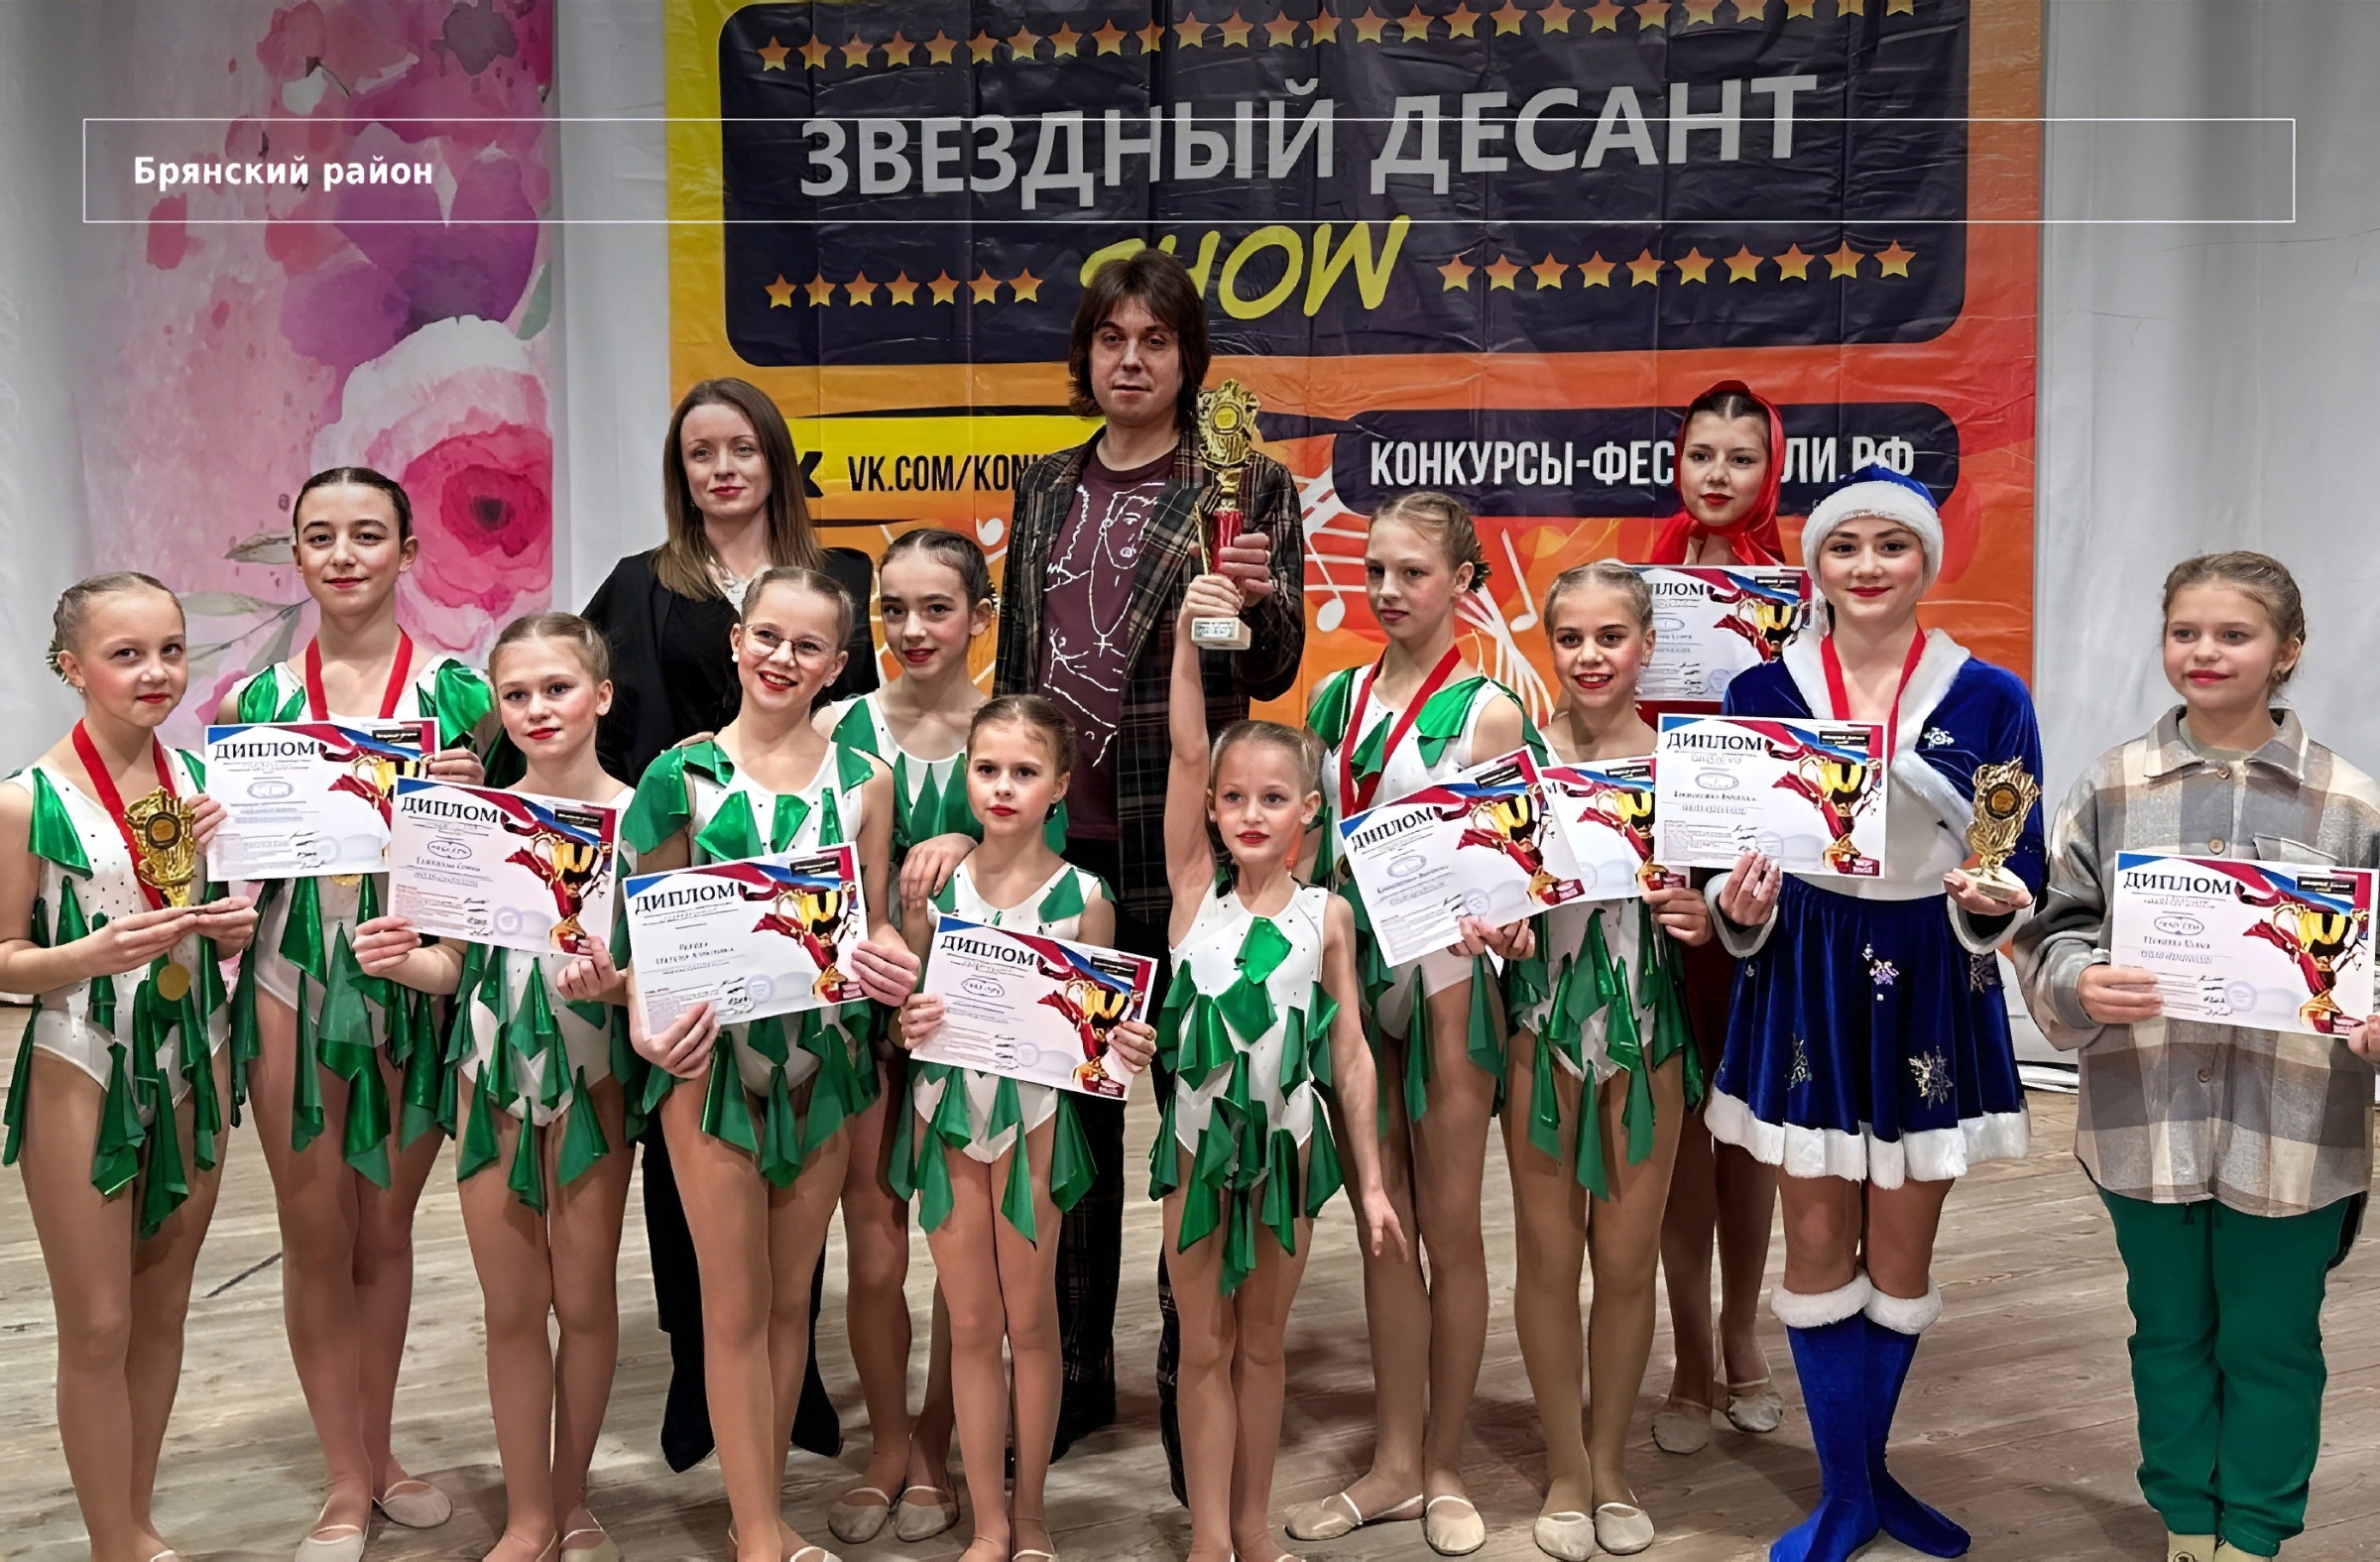 Юные цирковые артисты из Добруни взяли гран-при на конкурсе «Звёздный десант»